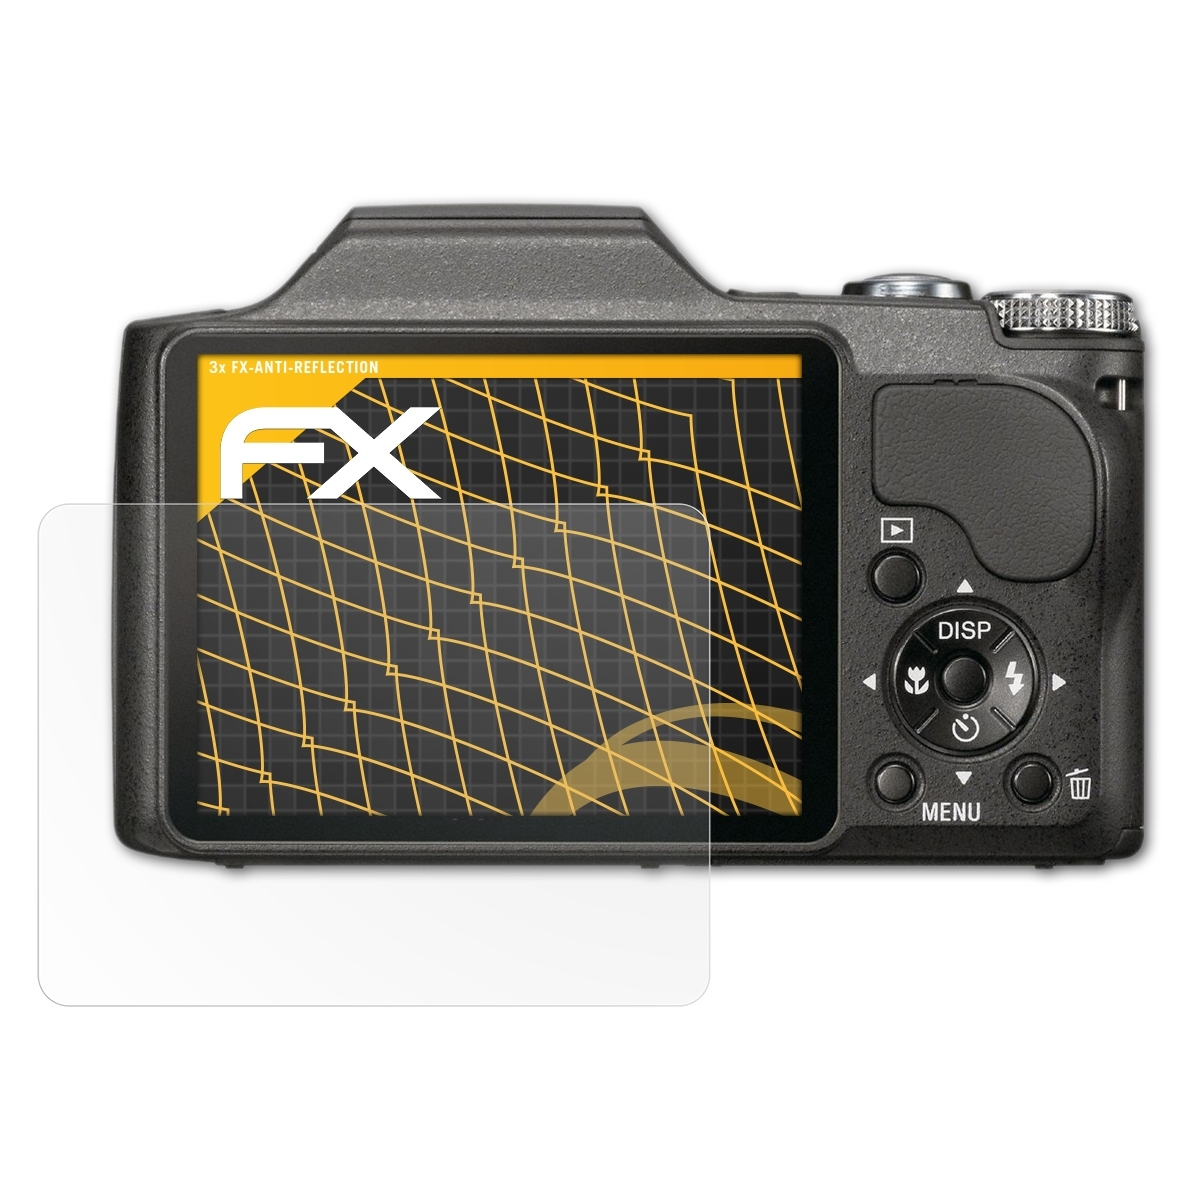 Displayschutz(für FX-Antireflex 3x DSC-H20) ATFOLIX Sony